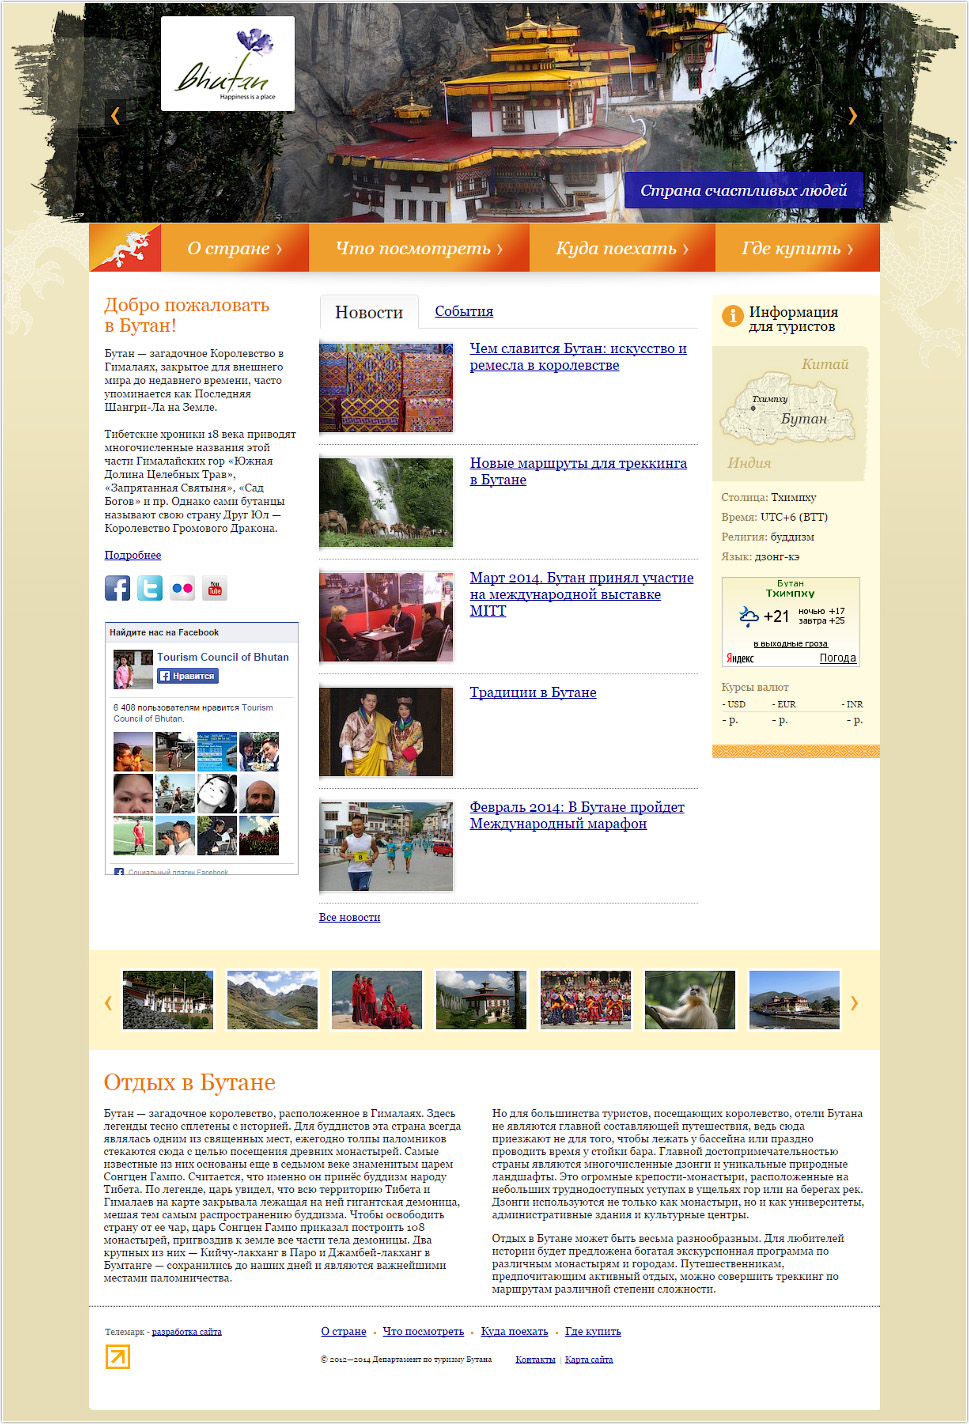 Официальная информация о Бутане